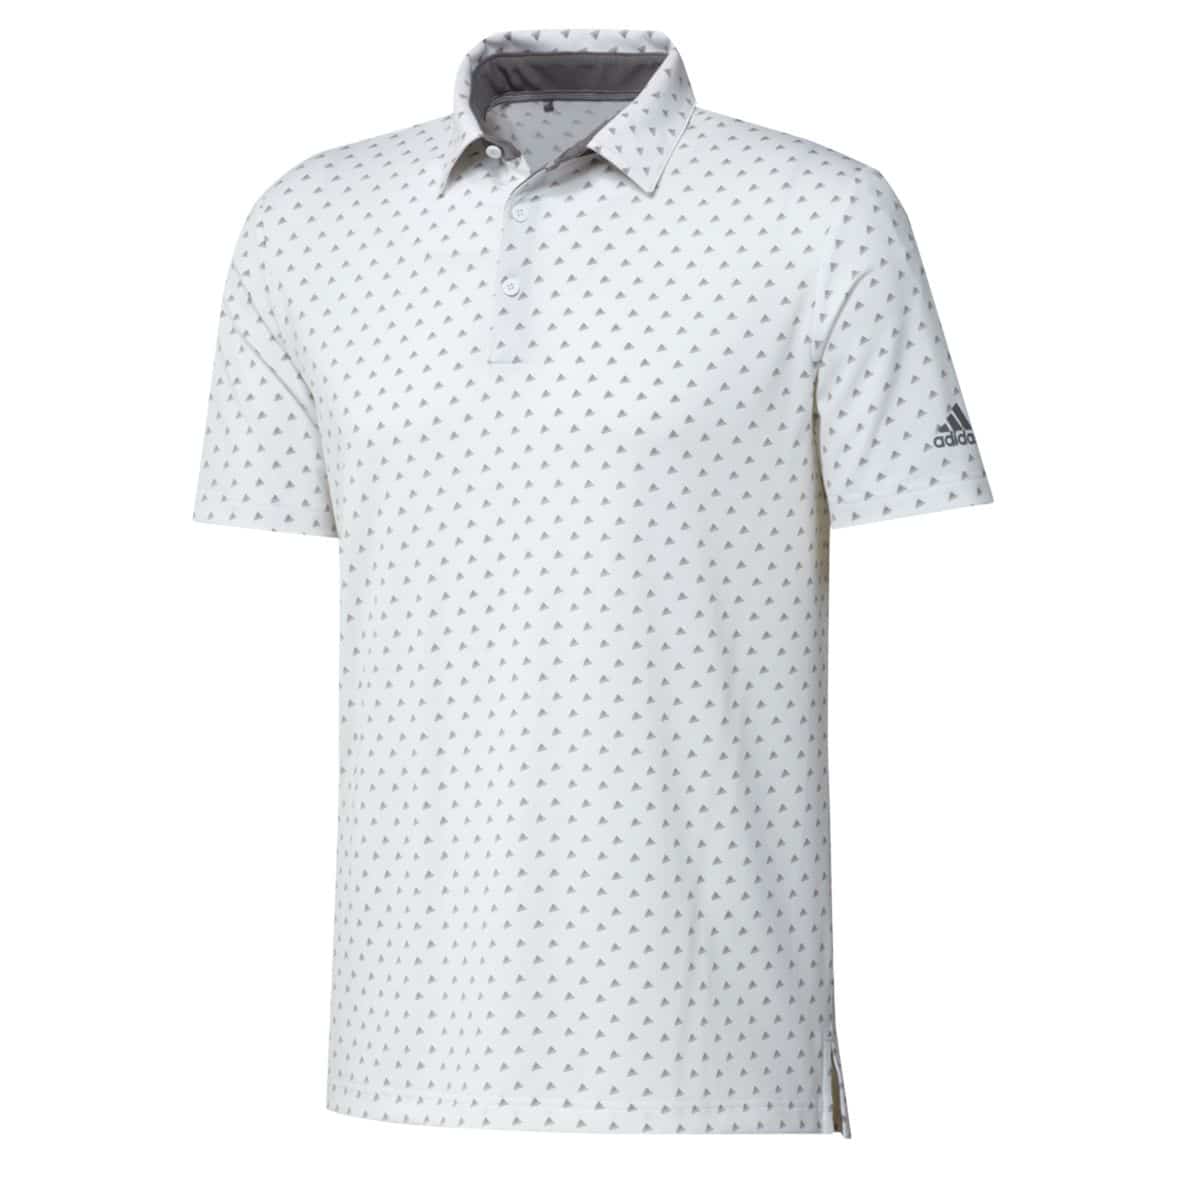 adidas ultimate 365 polo golf shirt